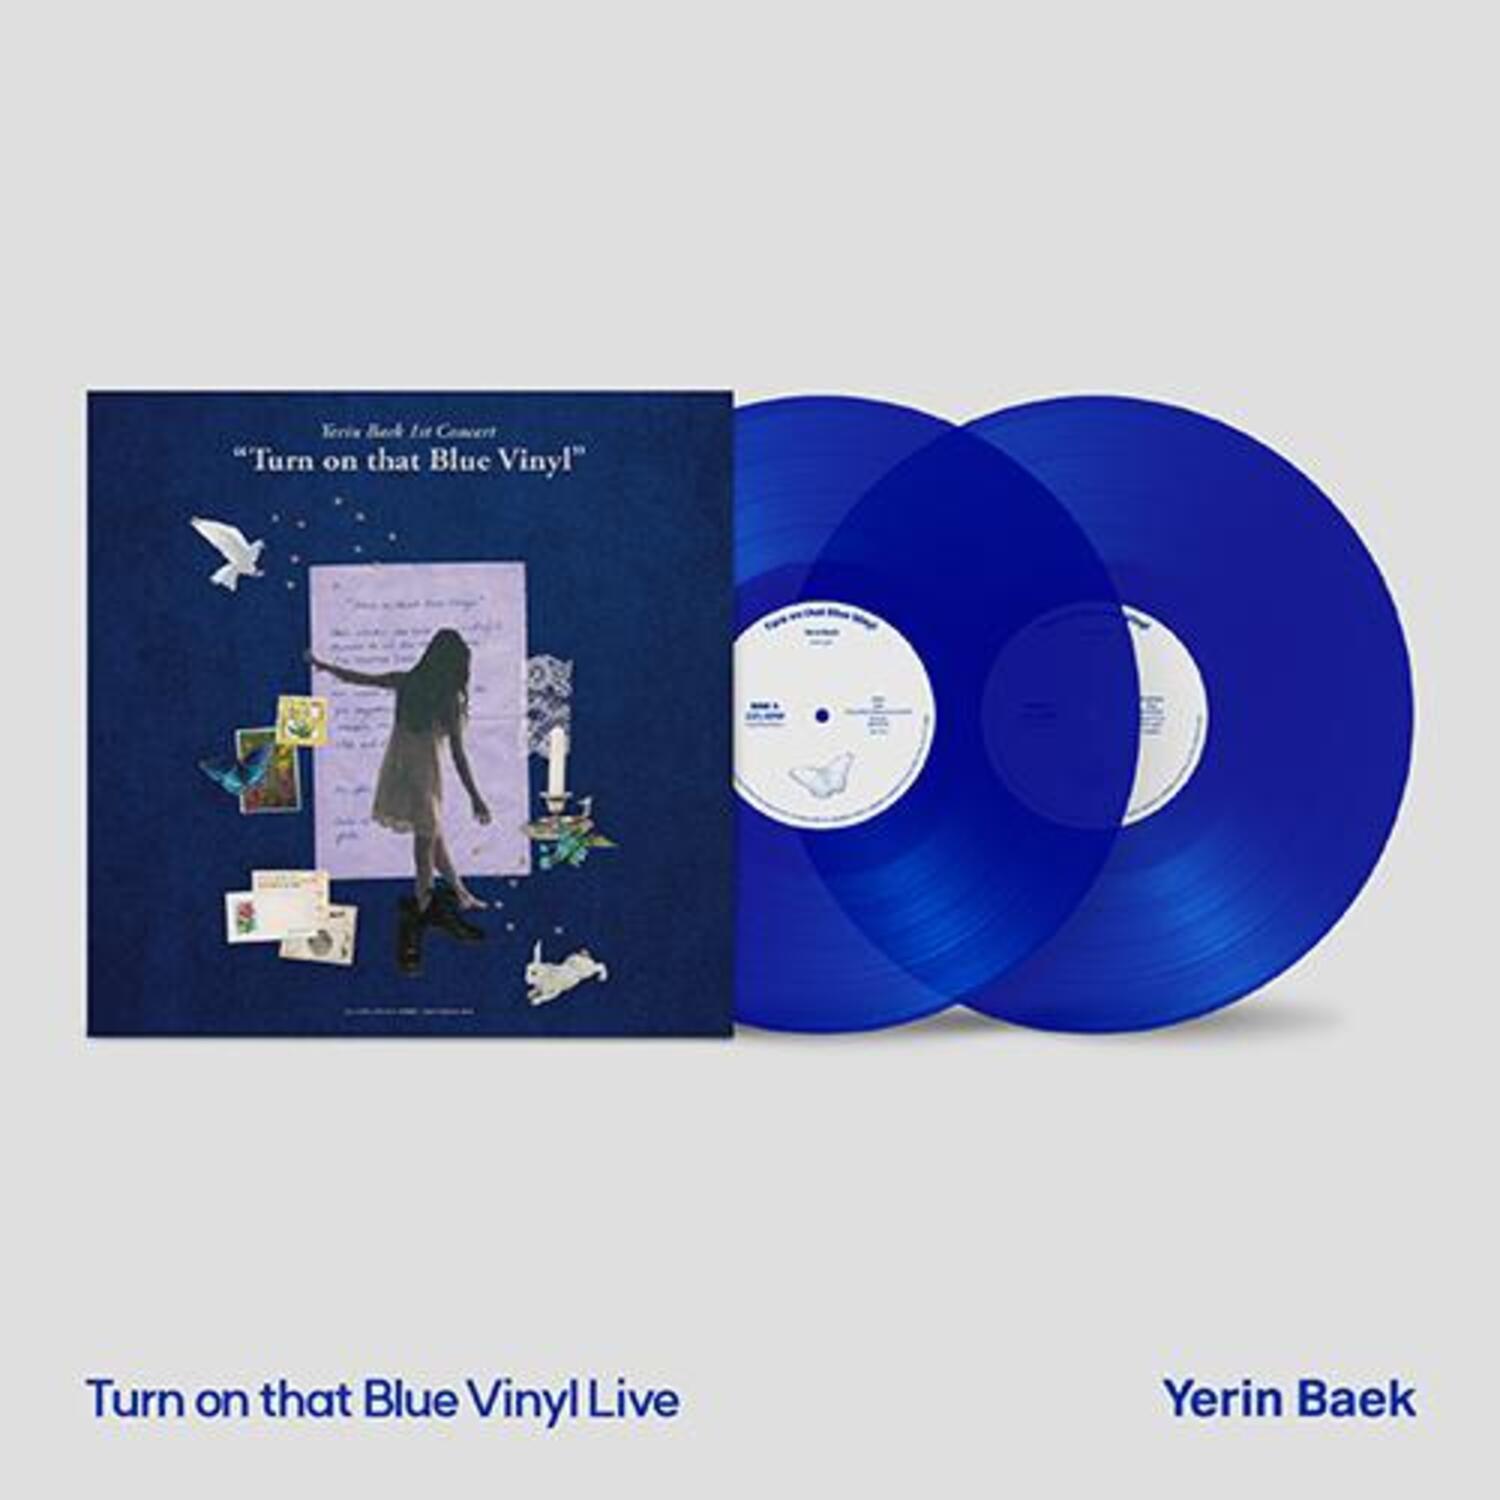 백예린(Yerin Baek) - 단독공연 [Turn on that Blue Vinyl] 라이브 특별반 (2LP)